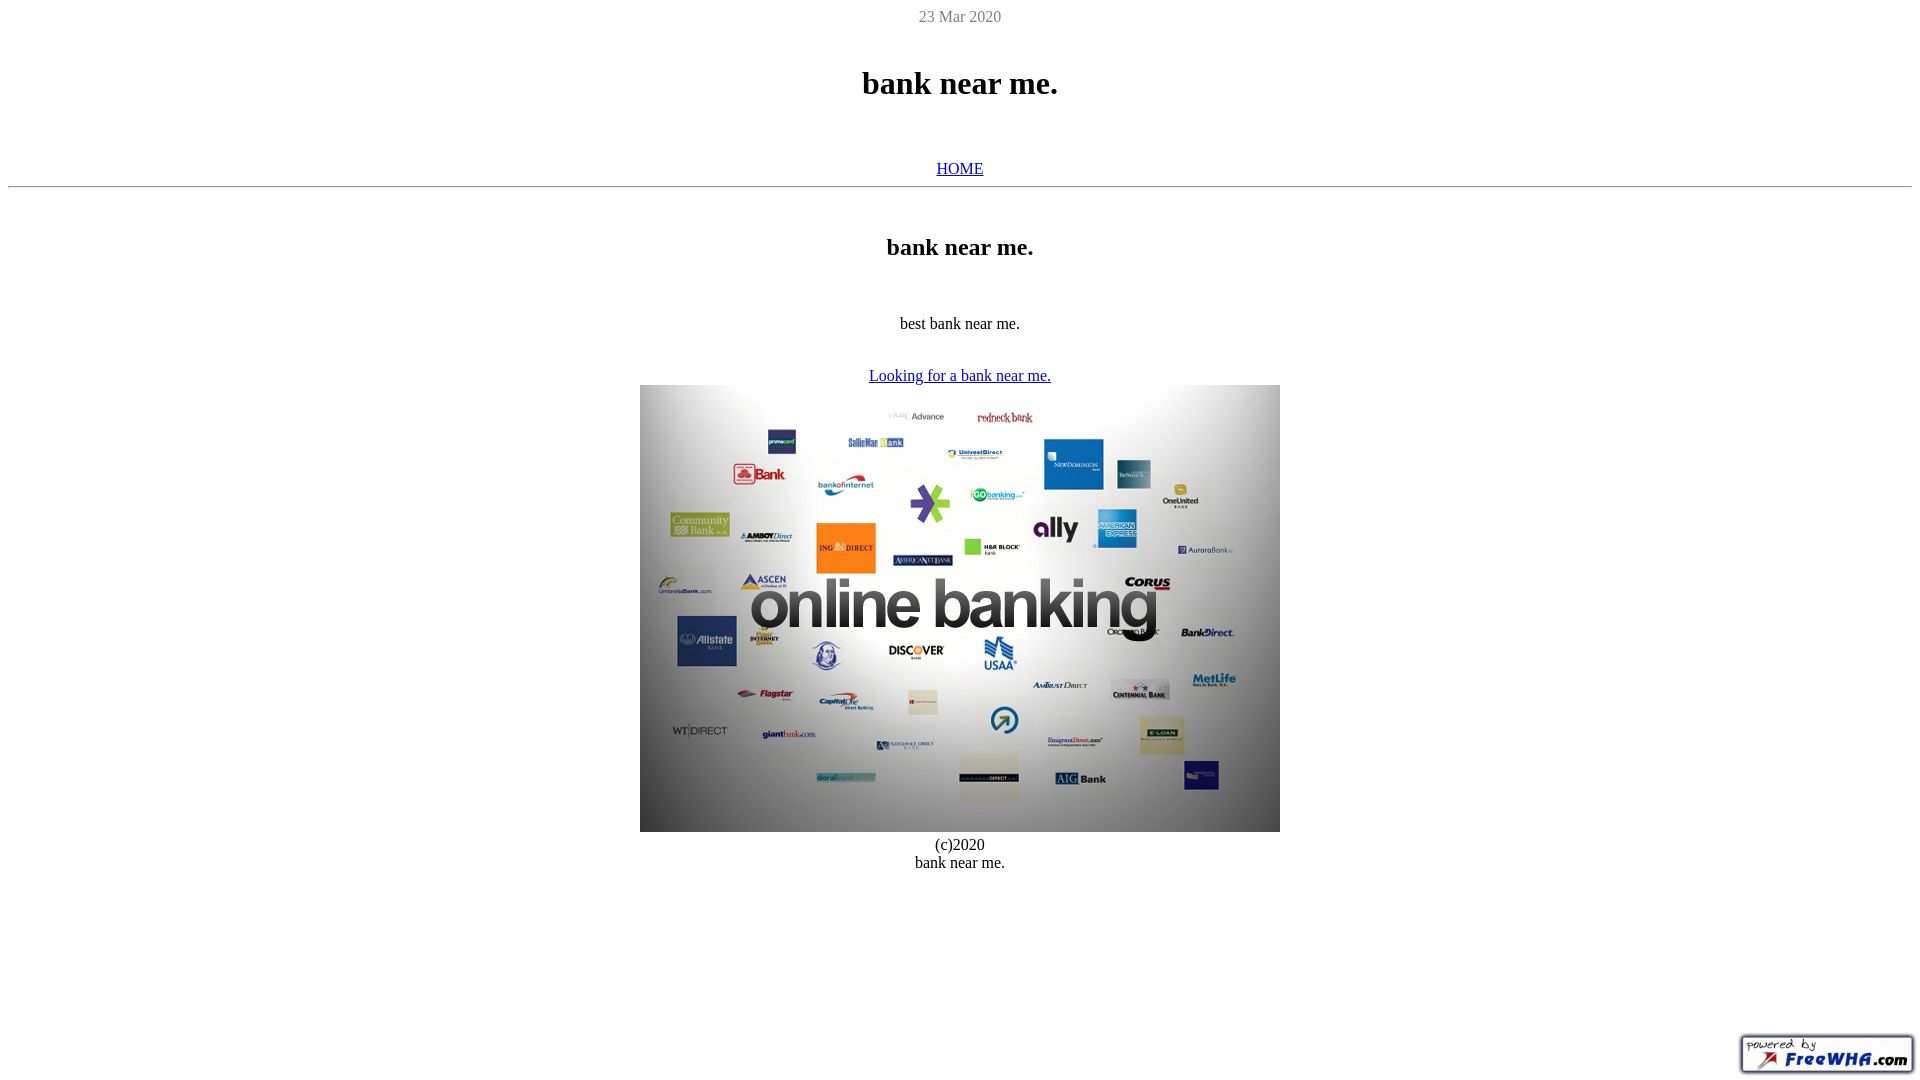 Website status banknearme.ueuo.com is   ONLINE